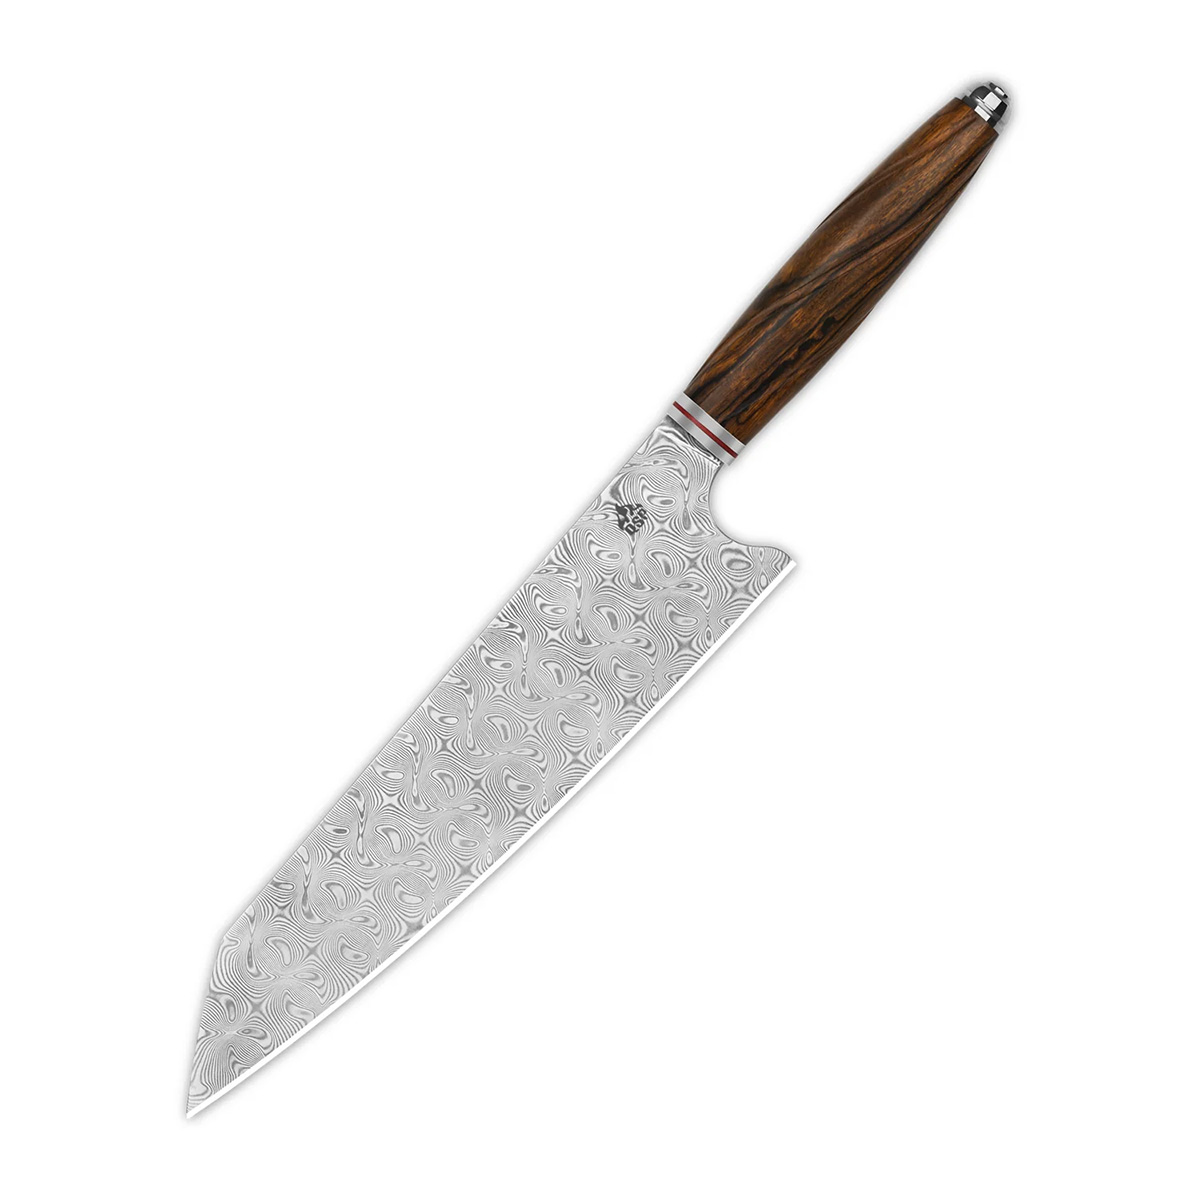 Поварской кухонный нож кирицуке QSP Mulan Series, сталь дамаск, рукоять дерево айронвуд